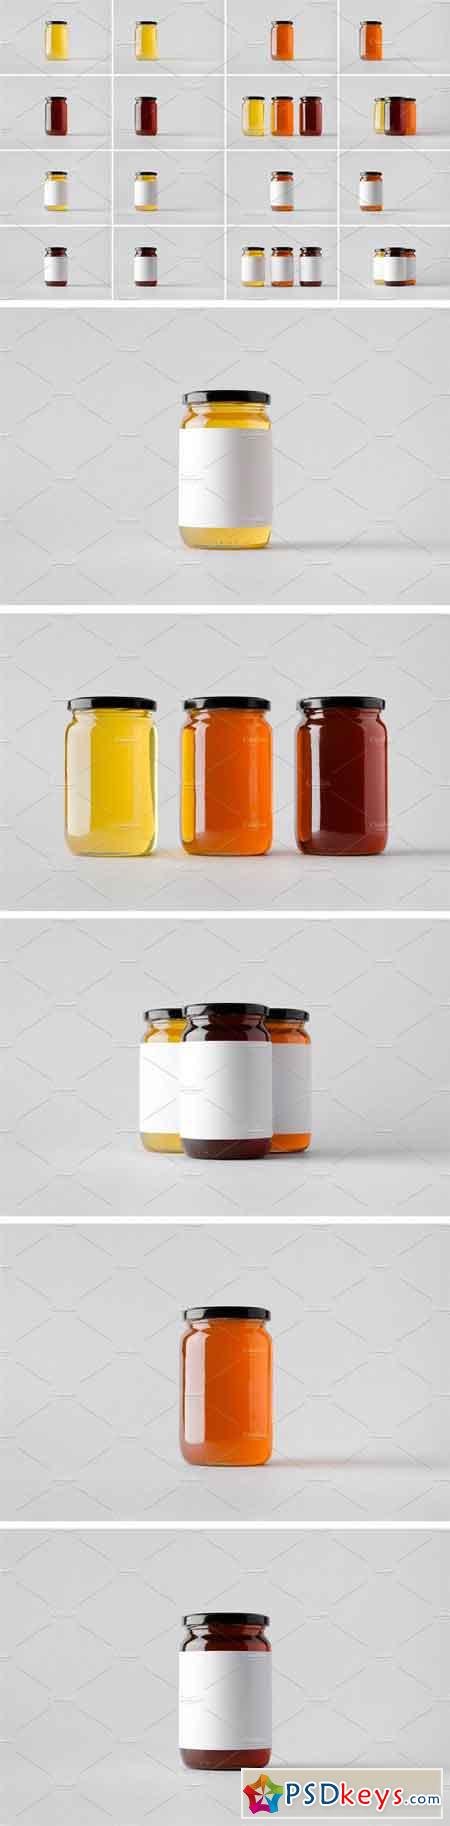 Honey Jar Mock-Up Stock Photo Bundle 1624513